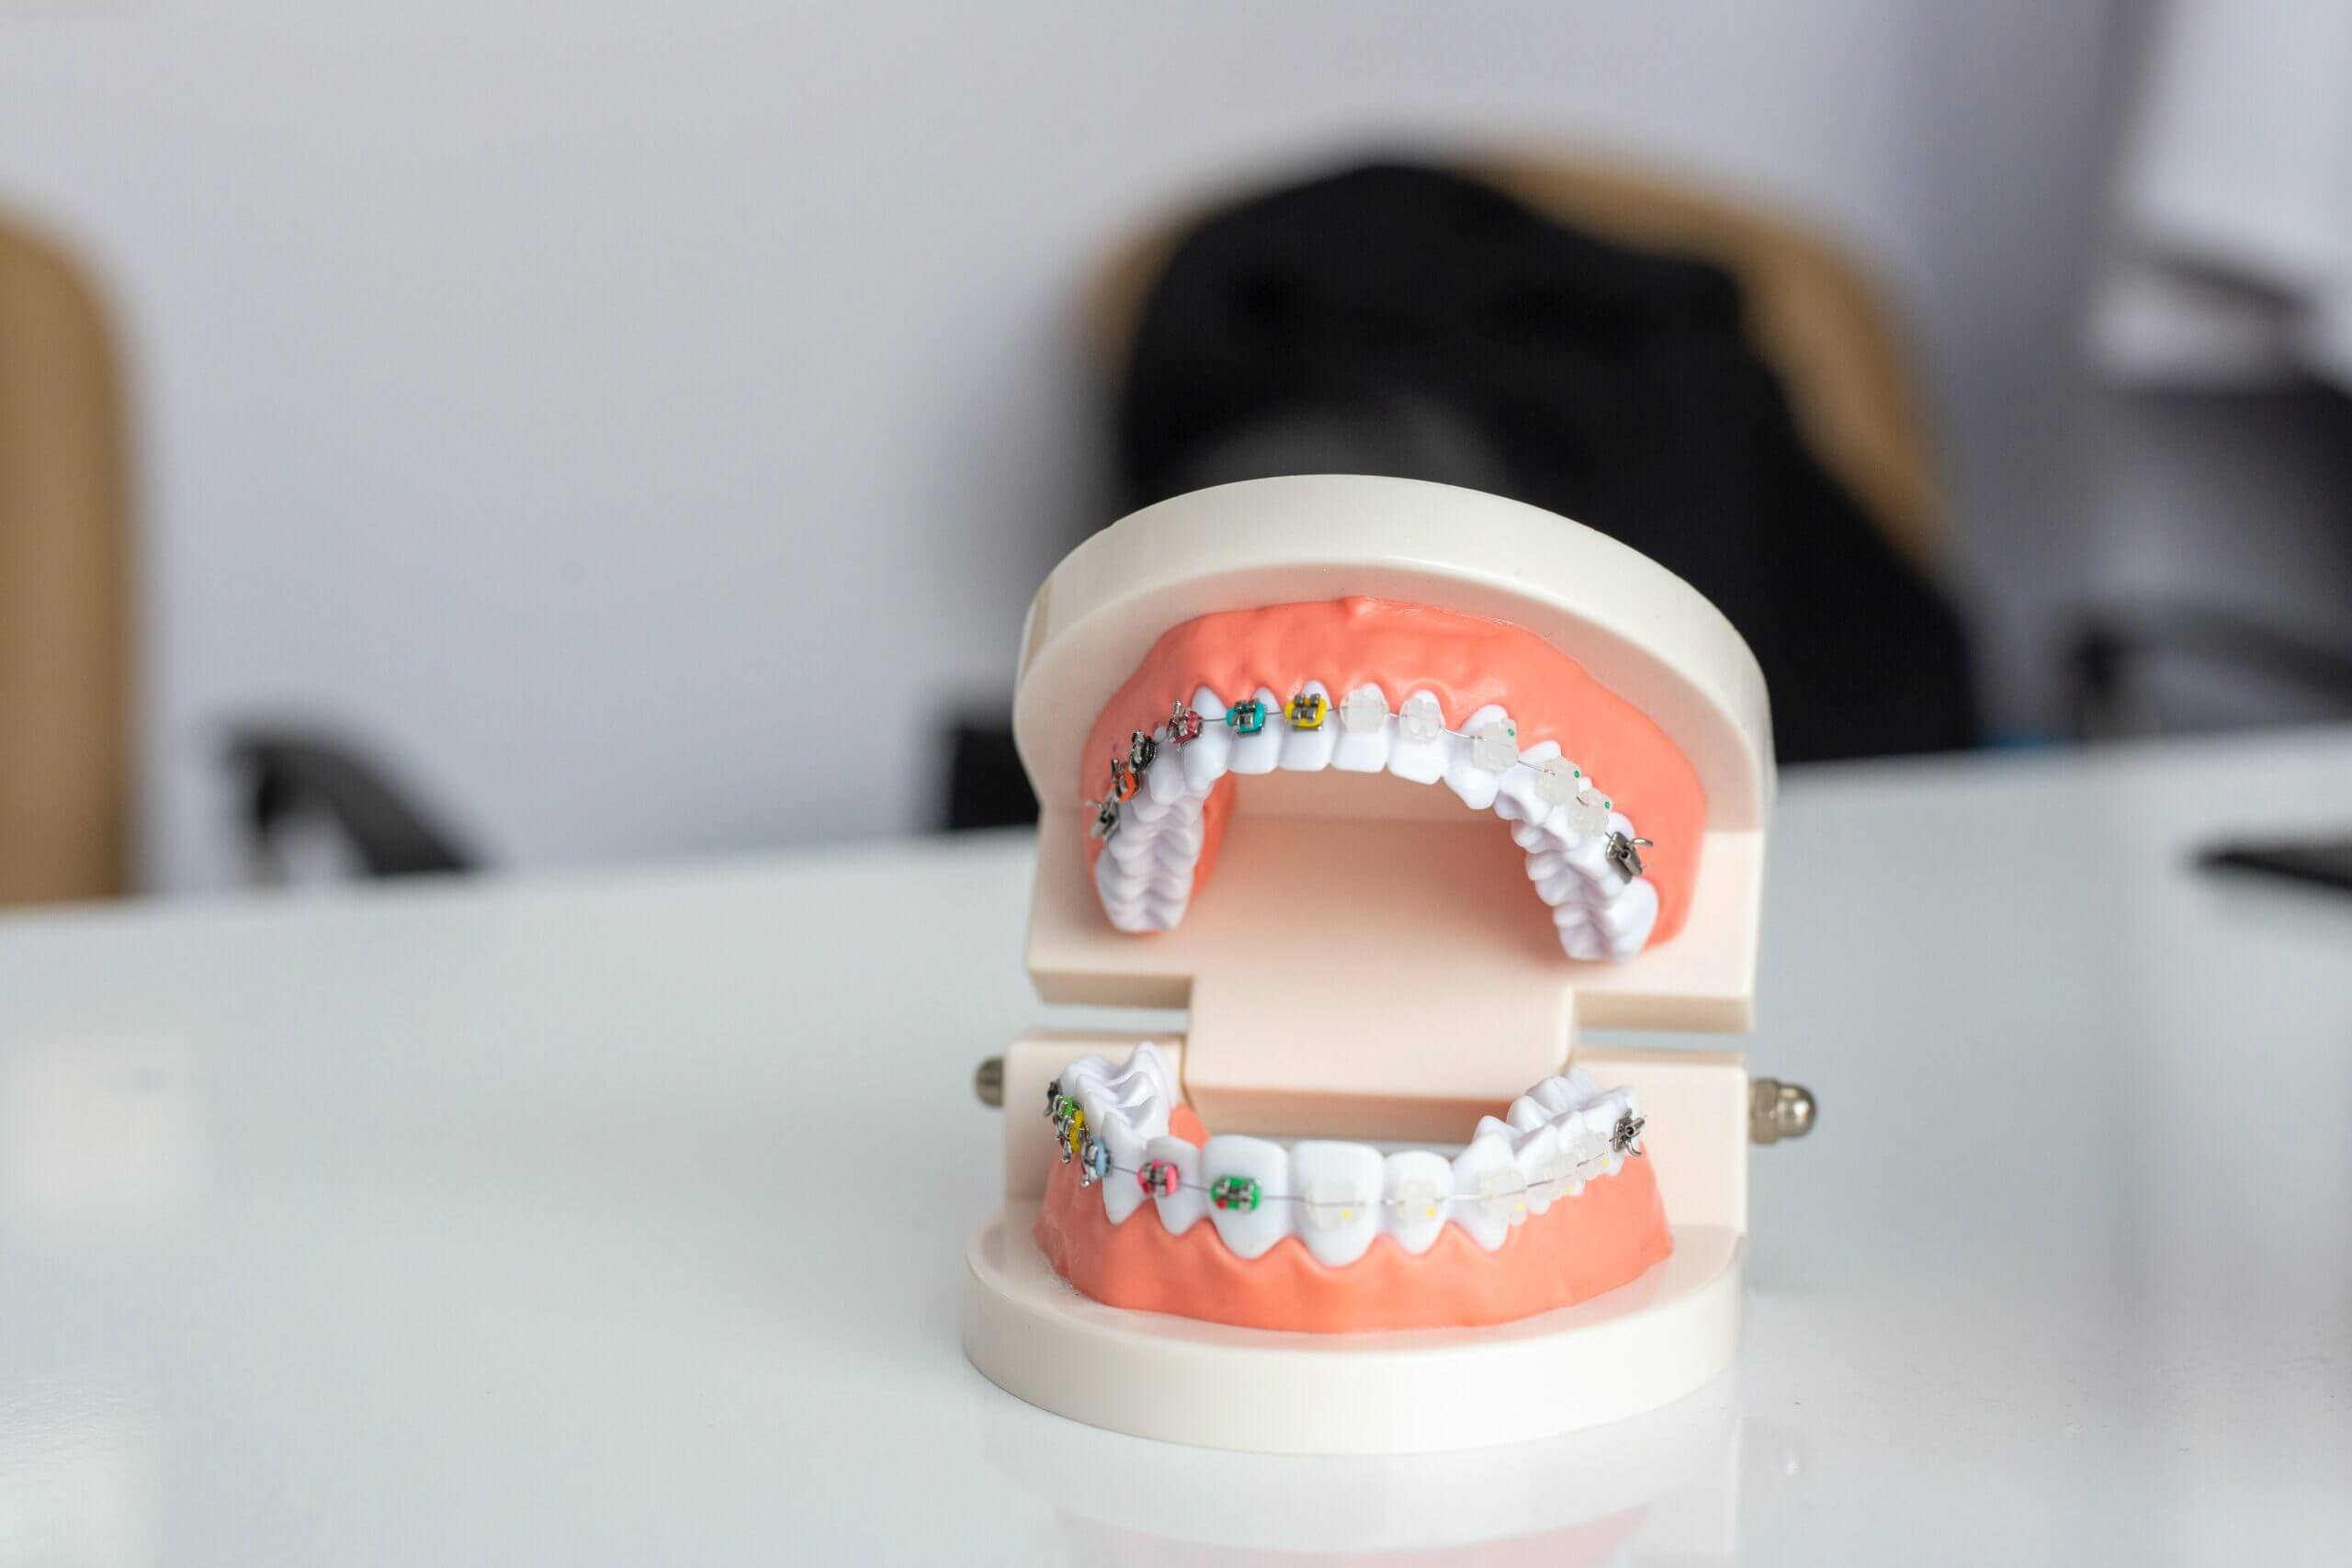 زيادة هائلة في عدد عمليات قلع الأسنان بسبب التسوس في بريطانيا